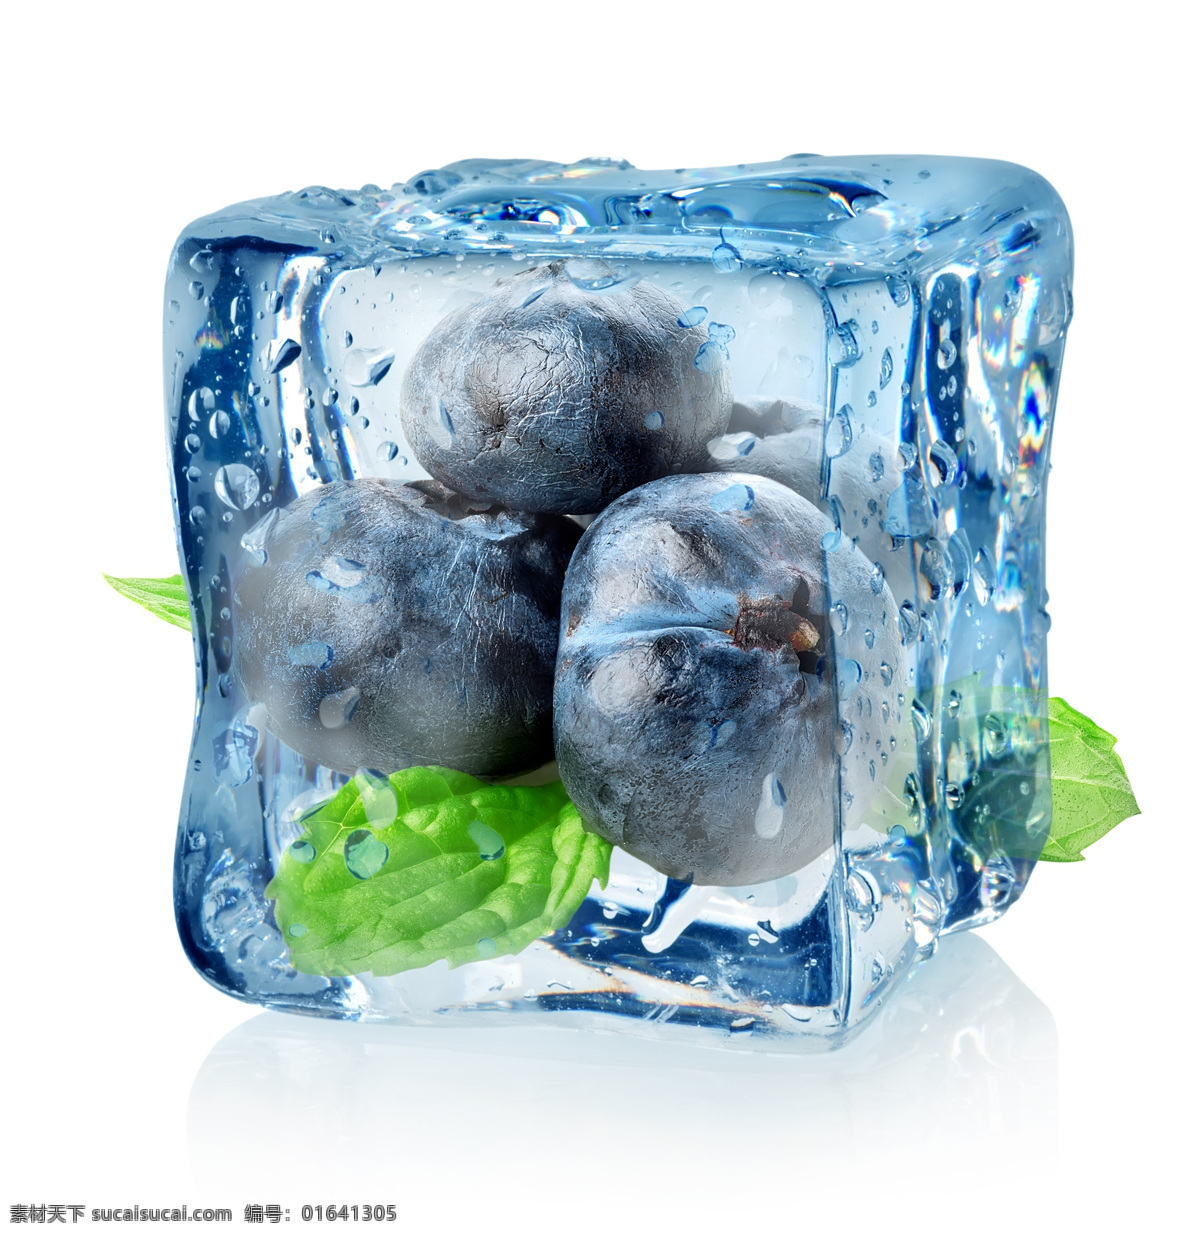 冰块里的蓝莓 水果 清新 创意 冰块 蓝莓 生物世界